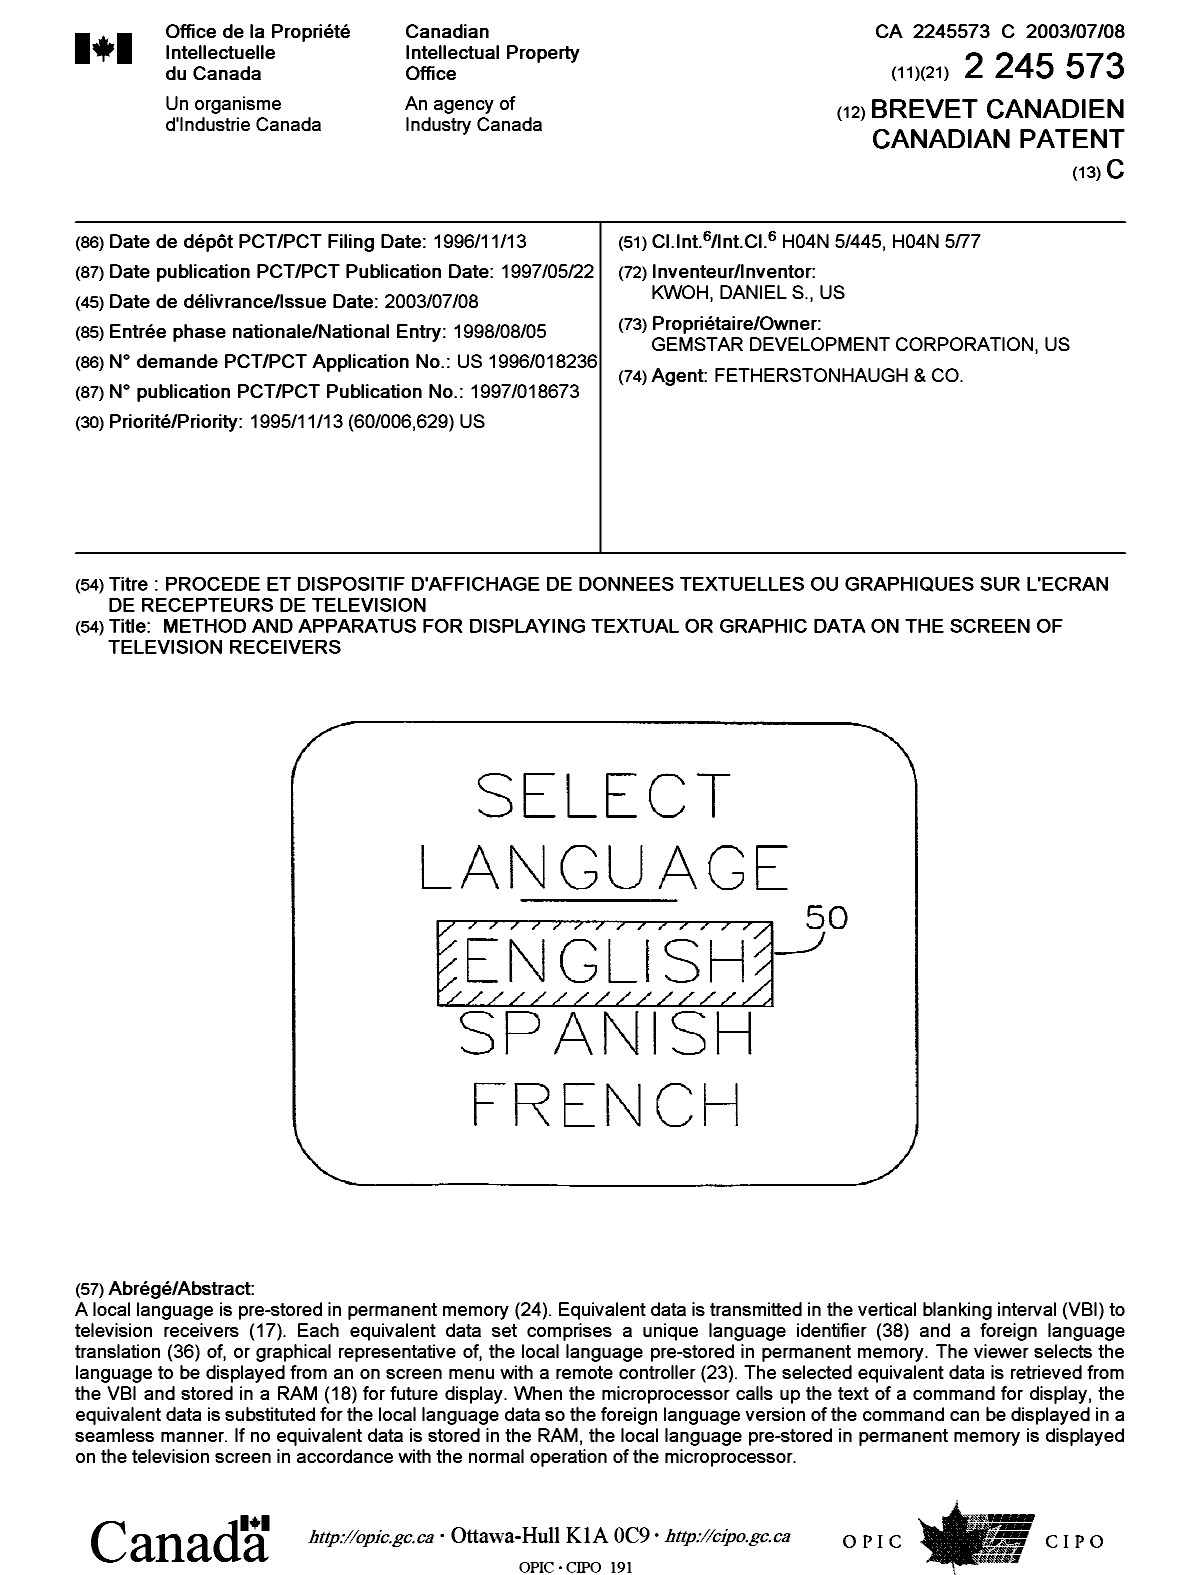 Document de brevet canadien 2245573. Page couverture 20030603. Image 1 de 1